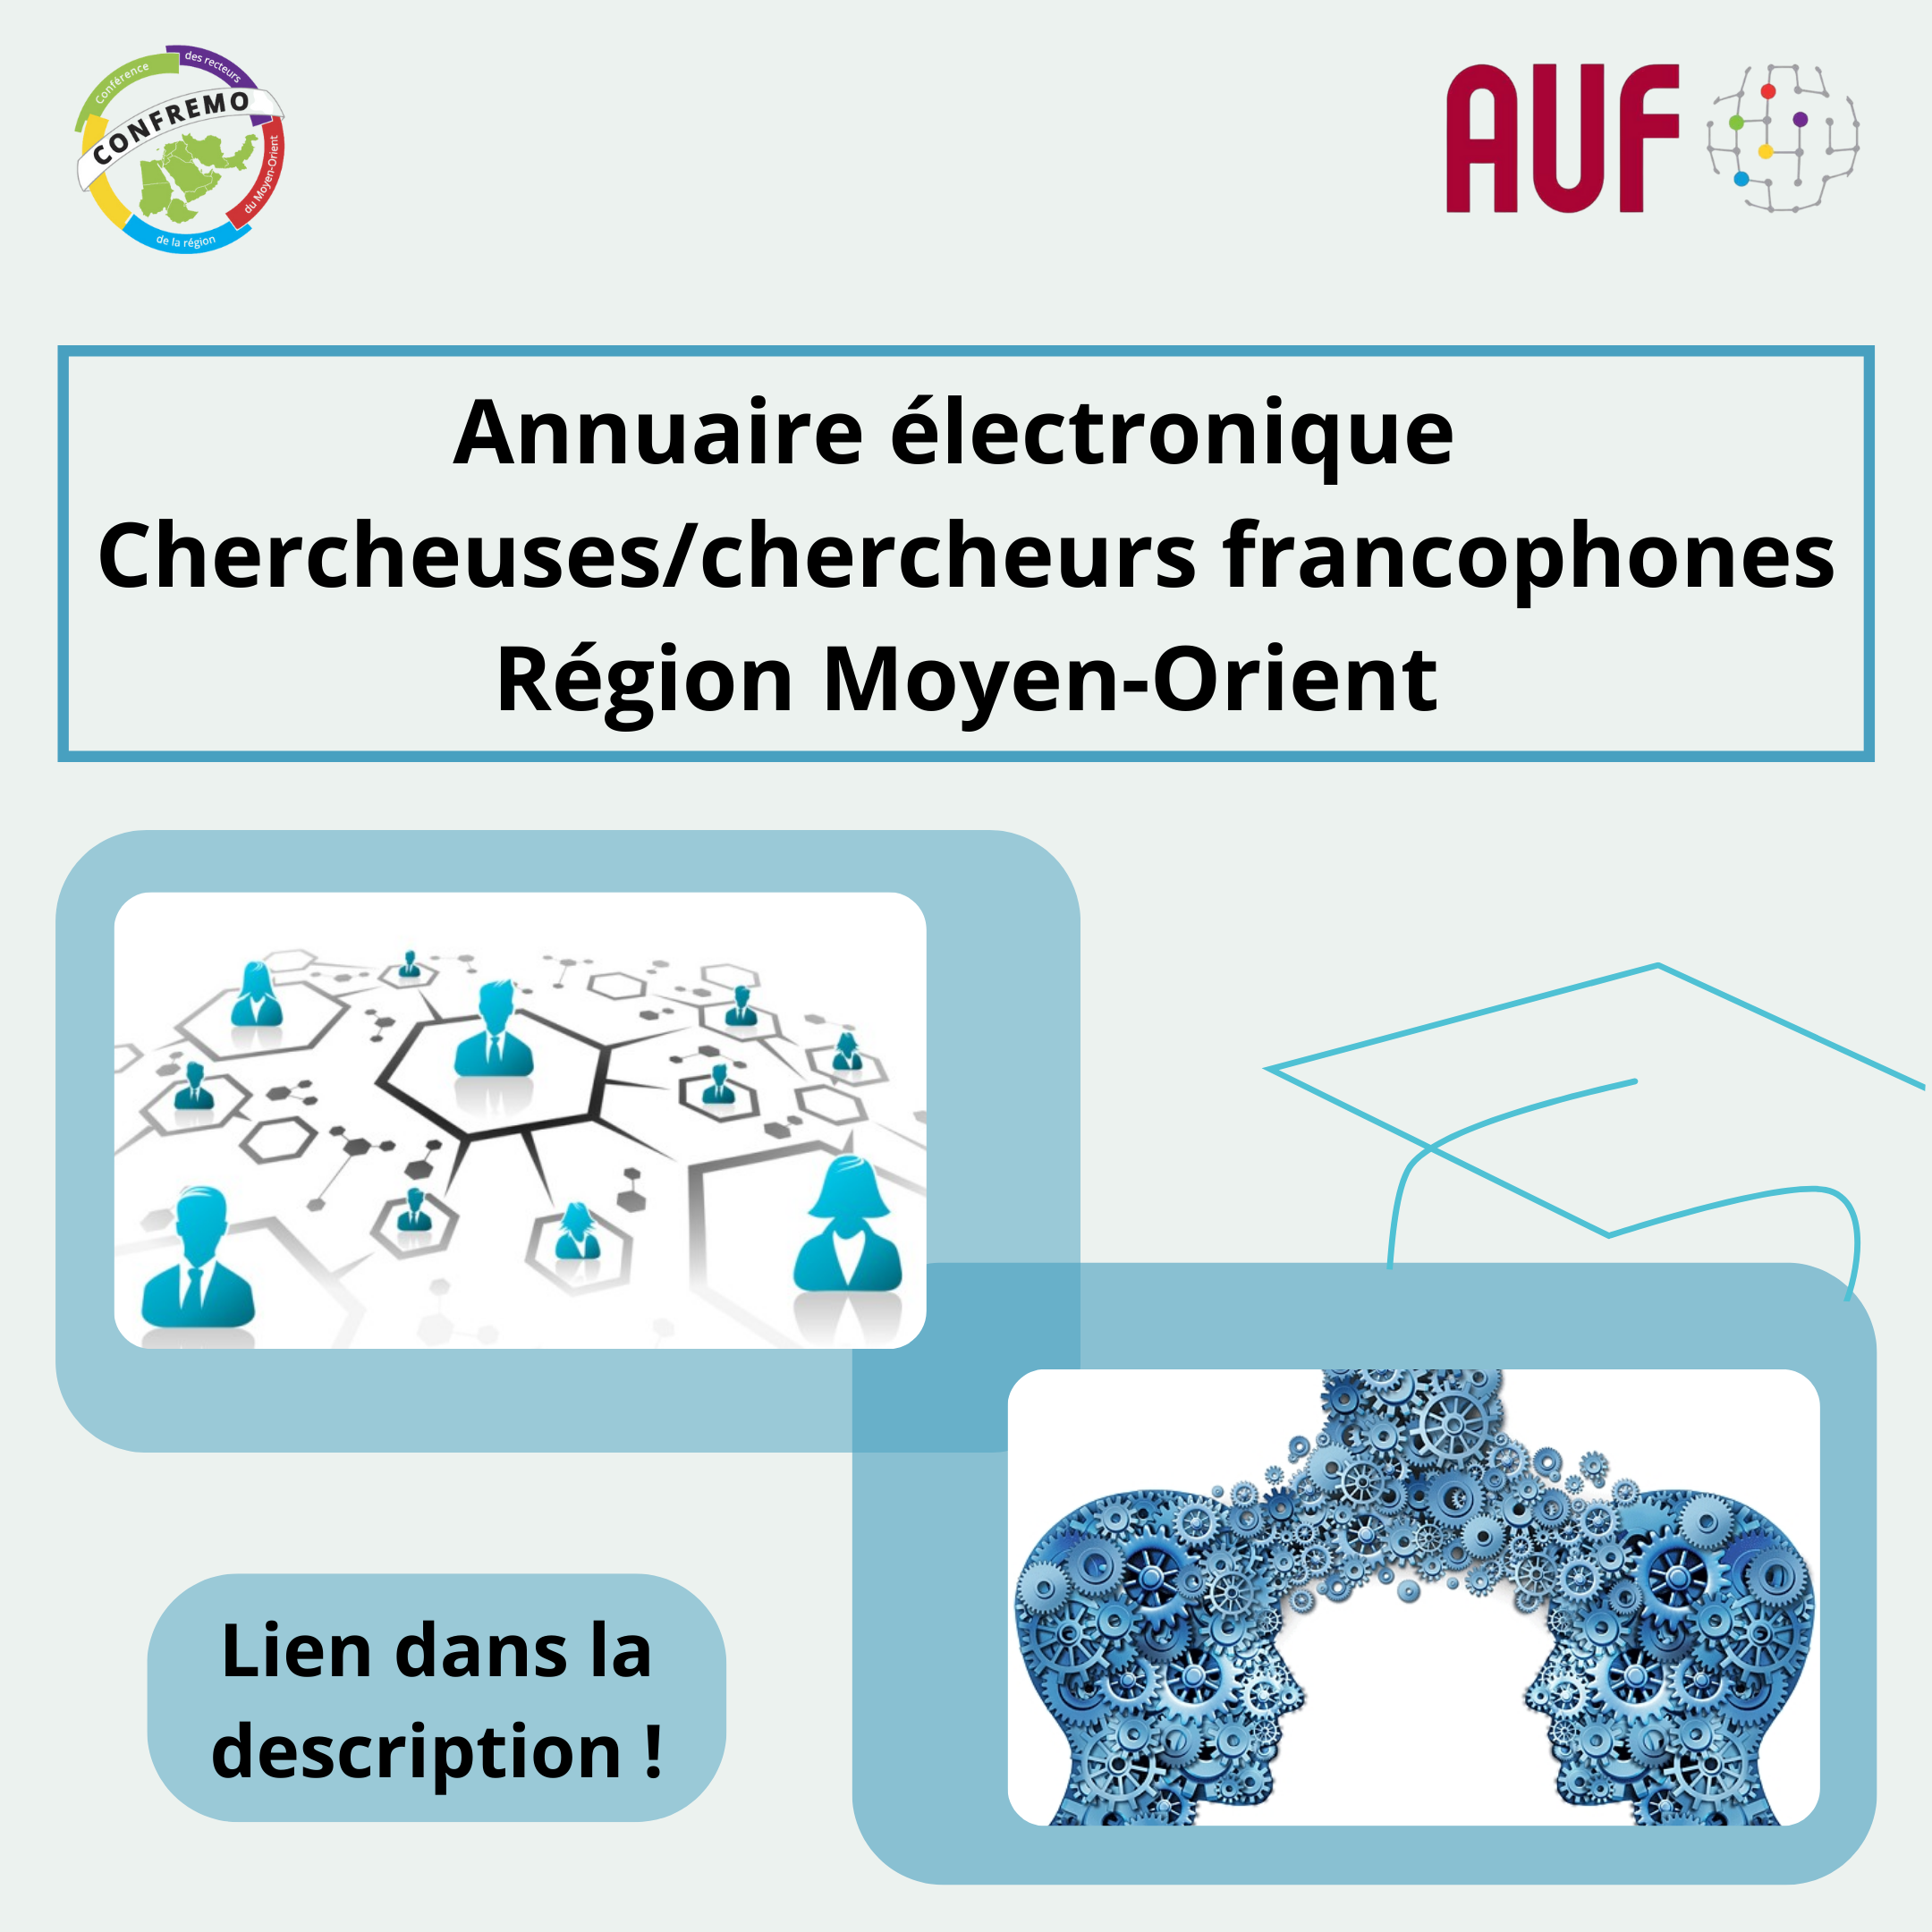 Annuaire électronique Chercheuses-chercheurs francophones Région Moyen-Orient